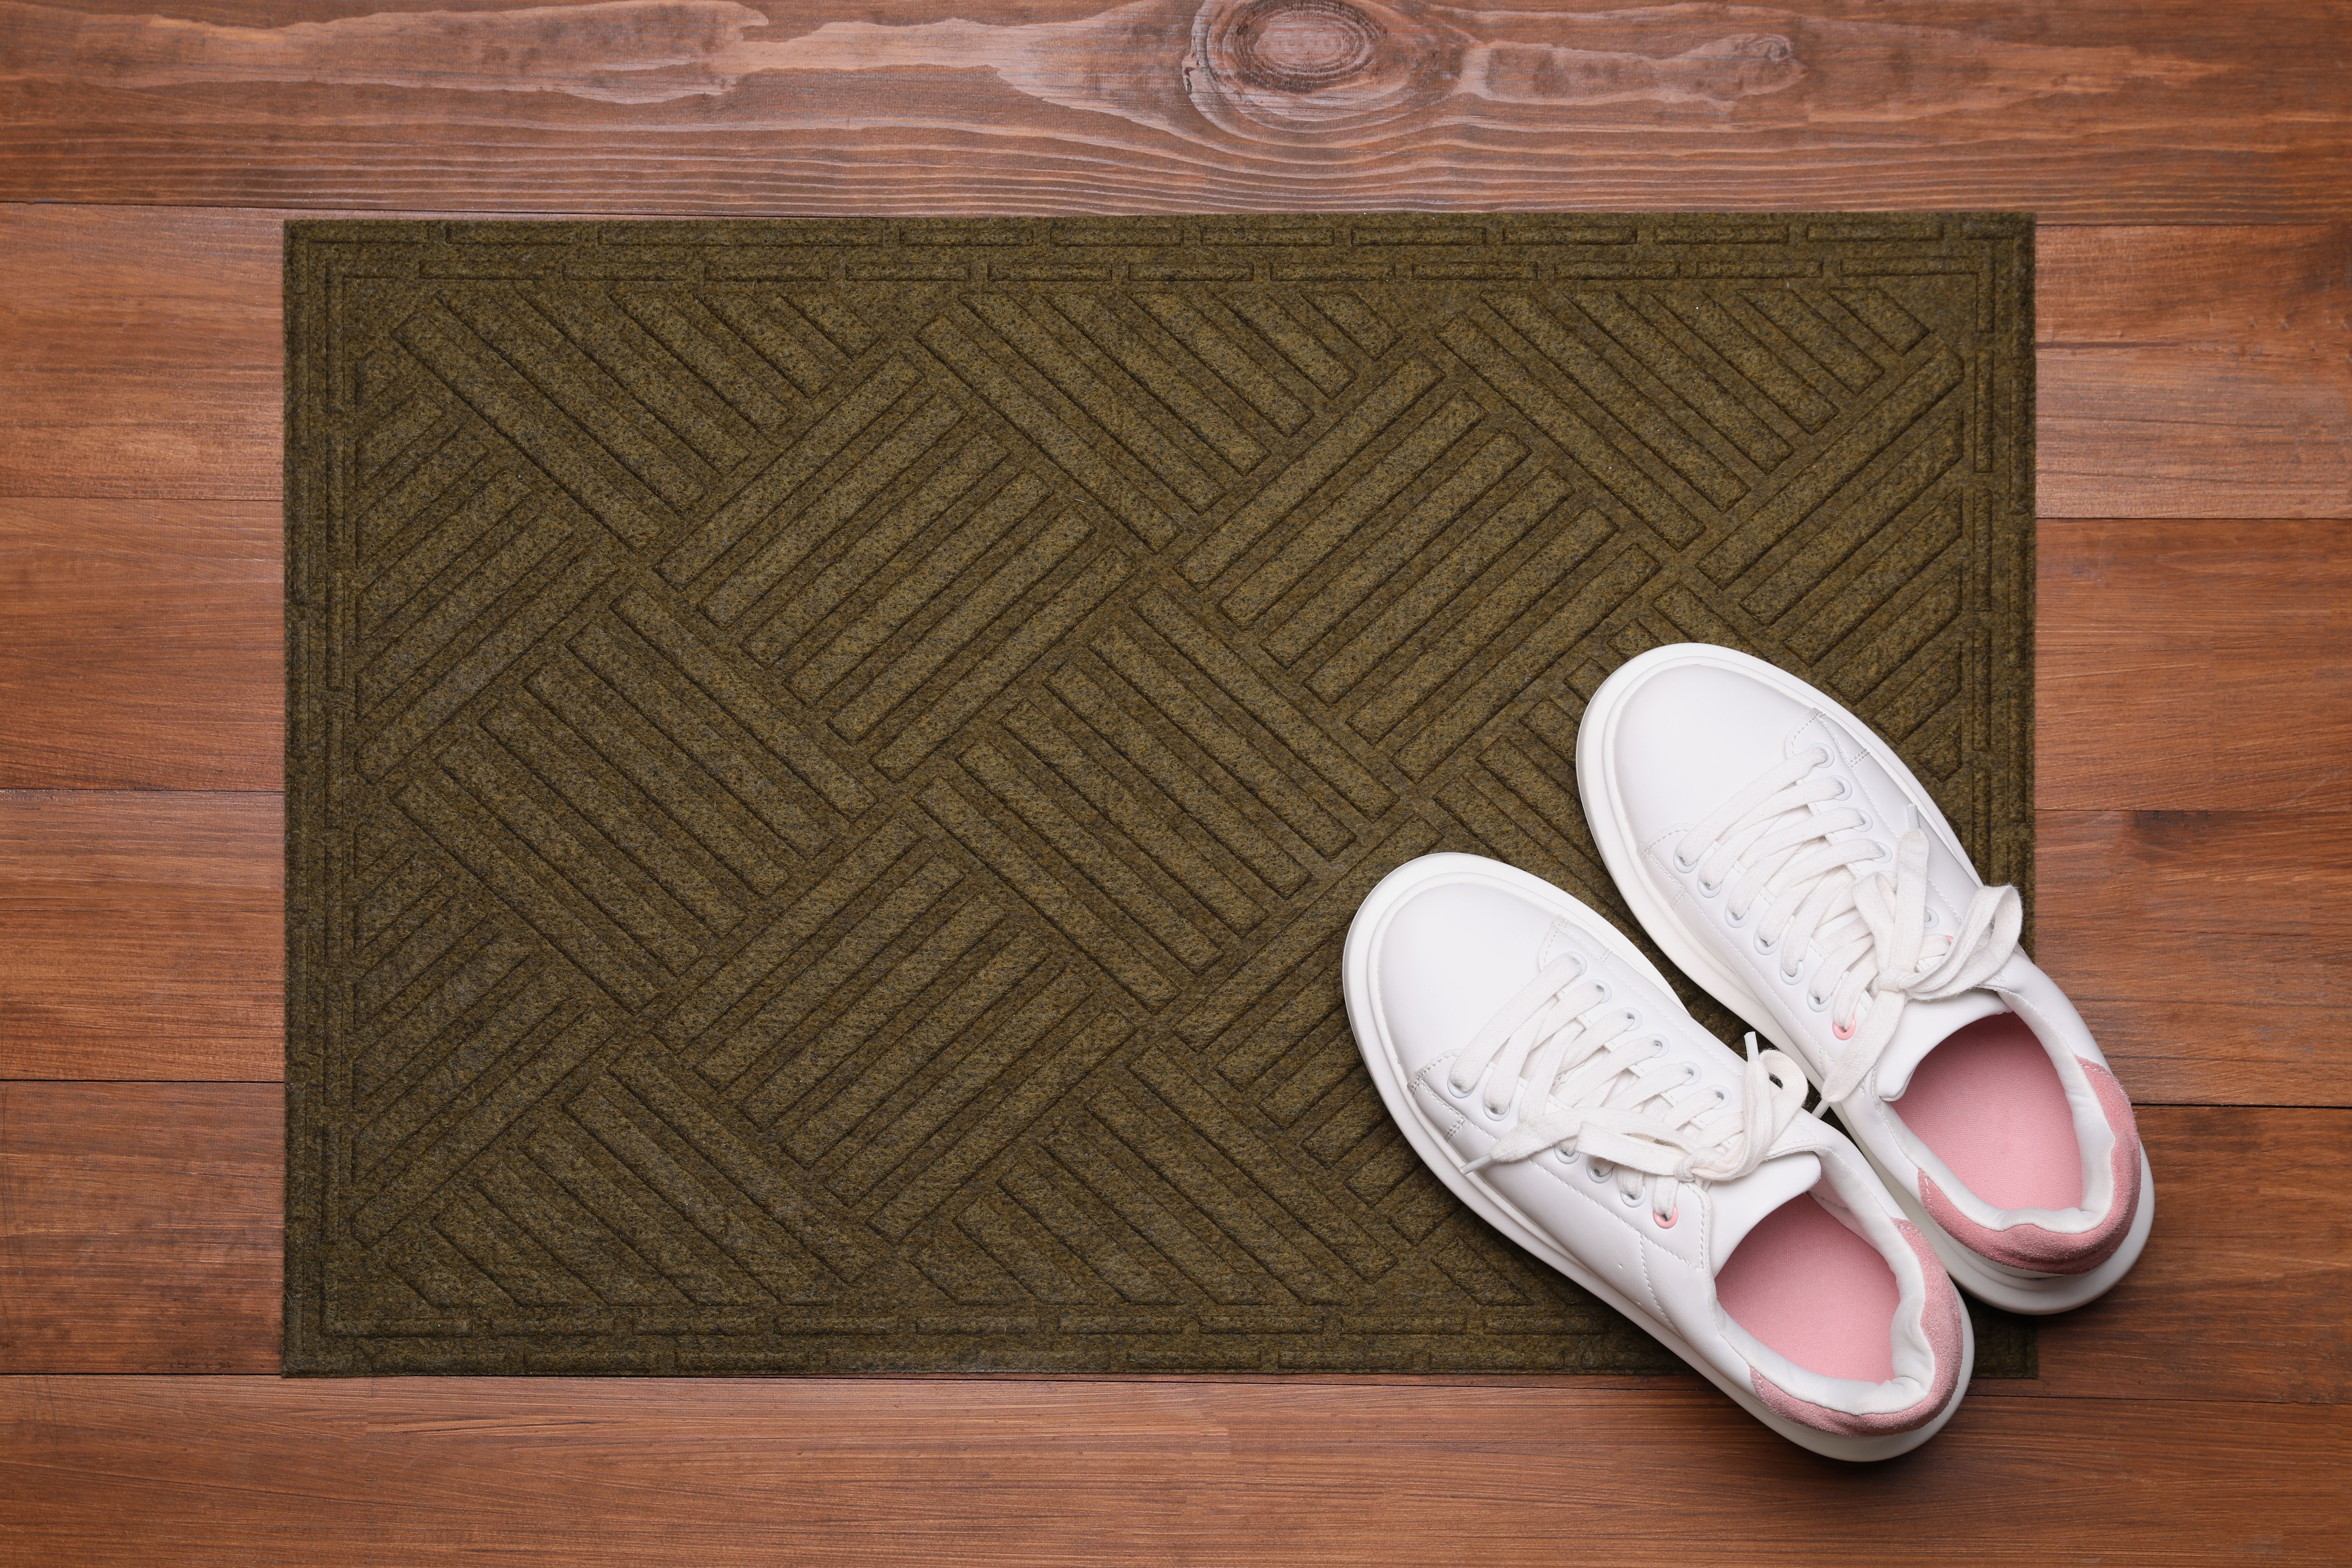 Shoes on a door mat. | Source: Shutterstock